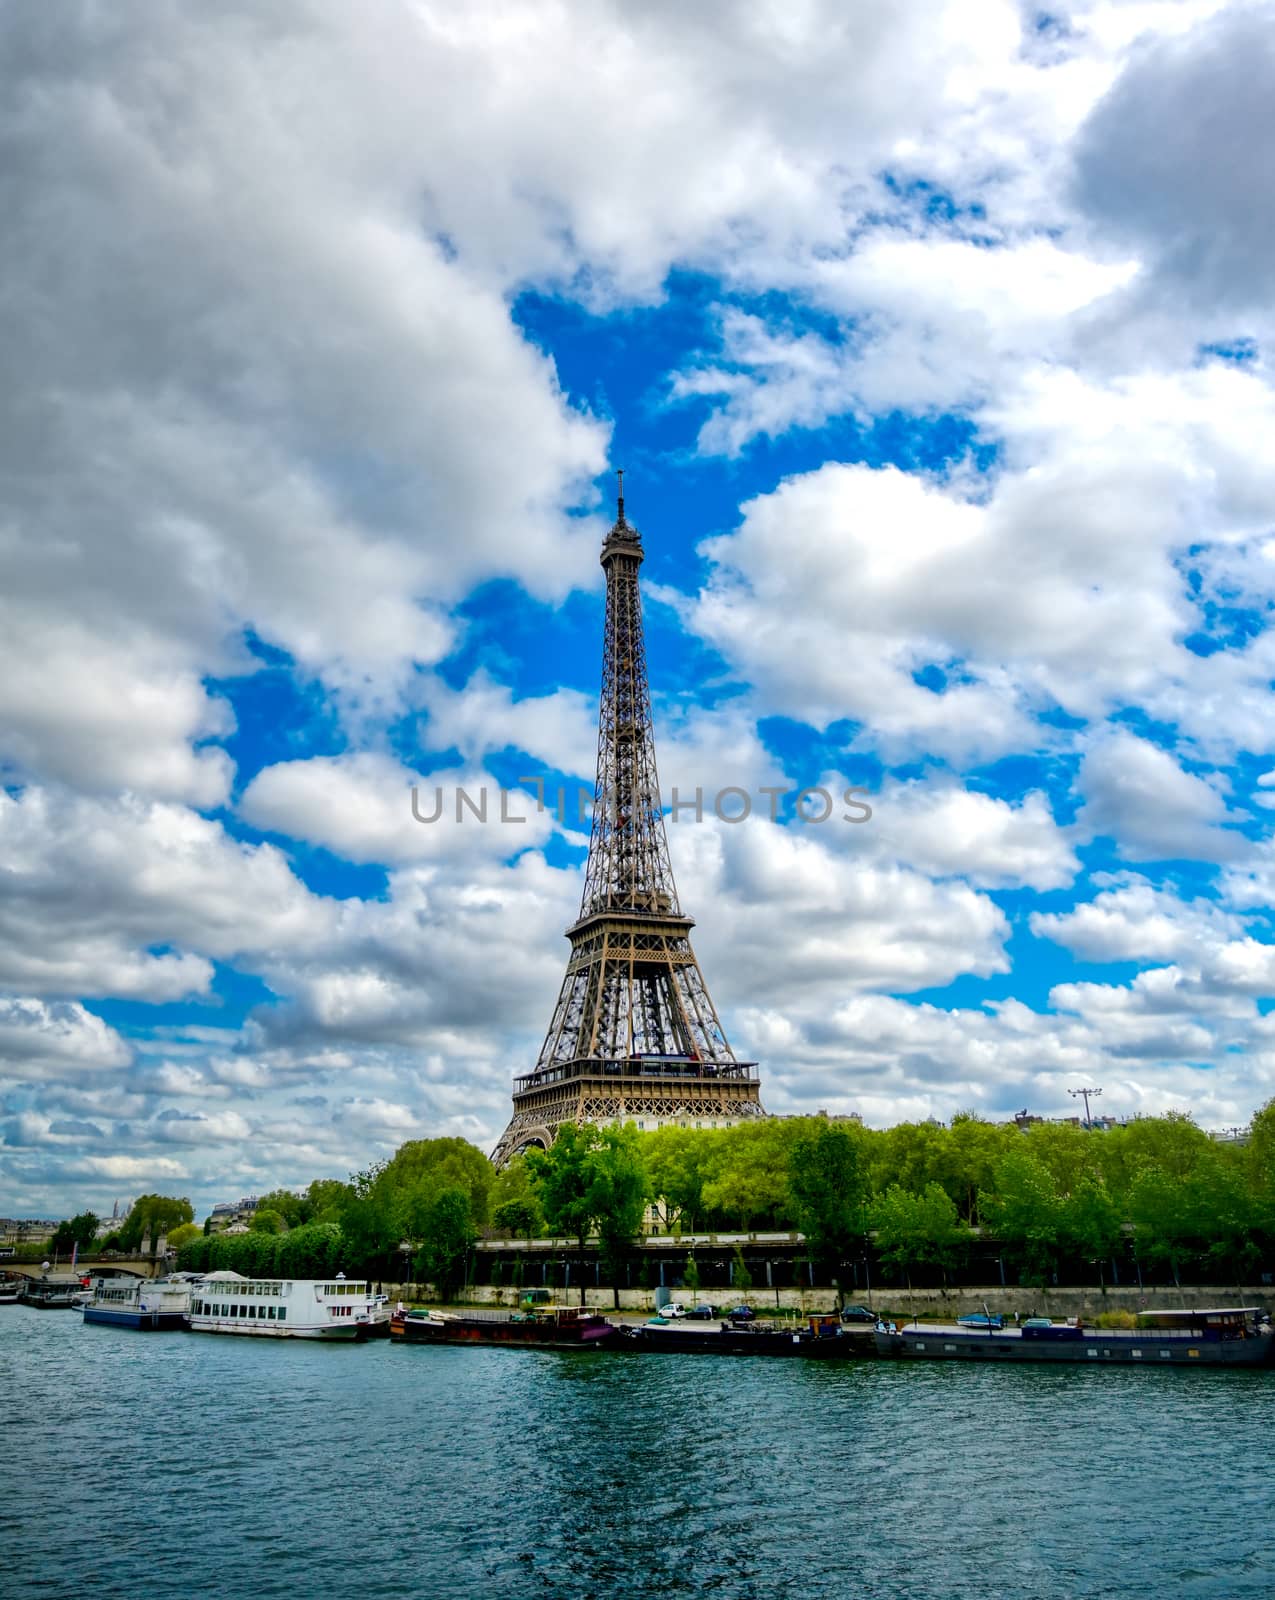 Eiffel Tower in Paris, France by jbyard22